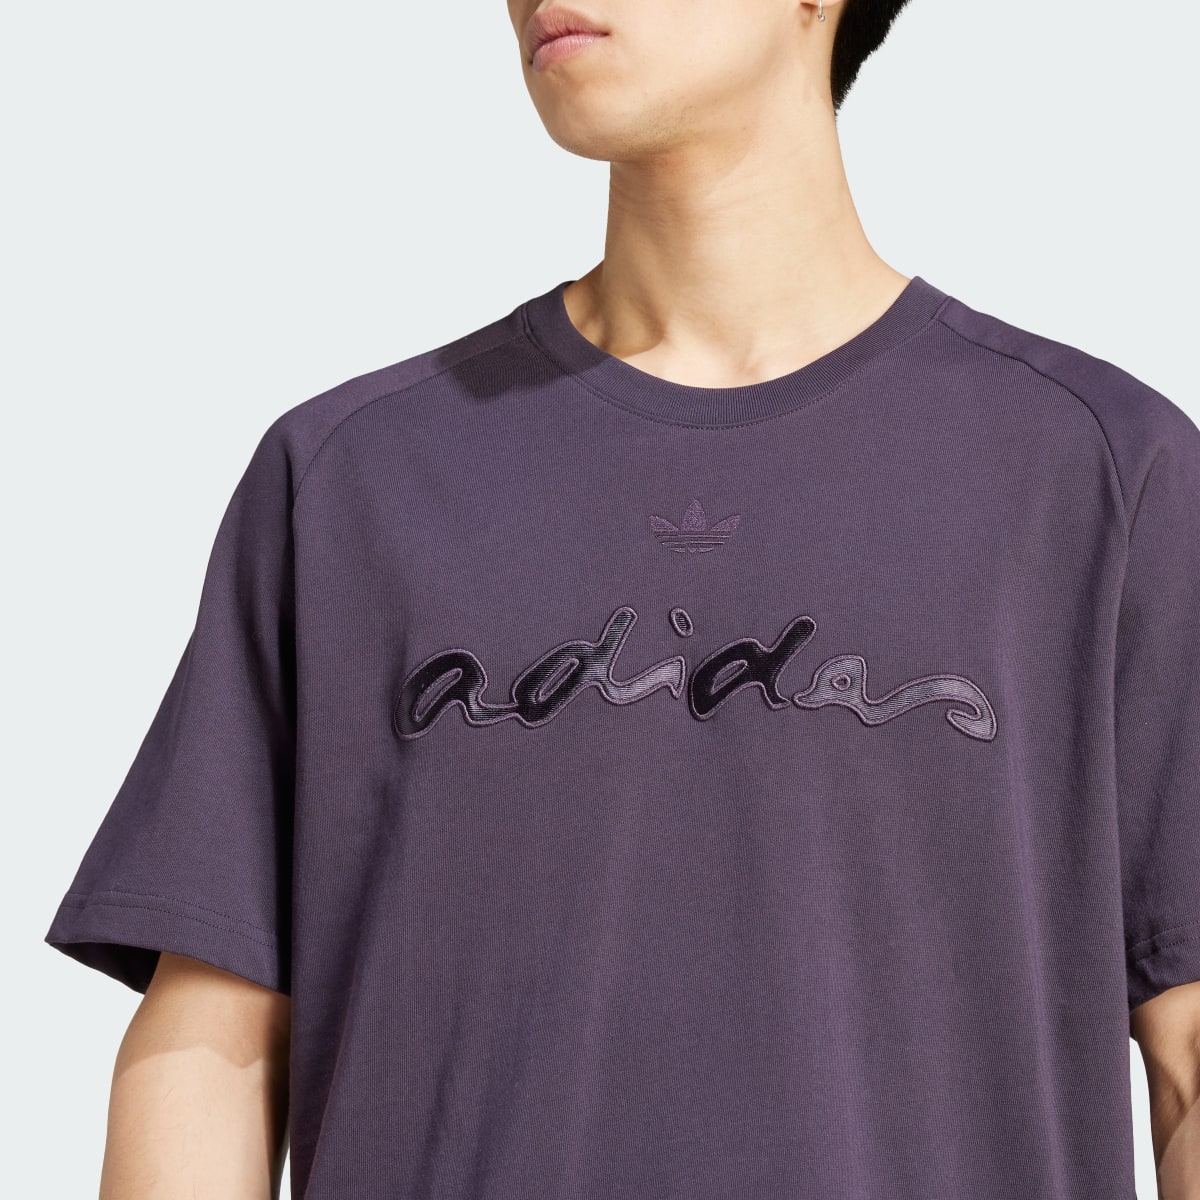 Adidas Graphic Tişört. 6